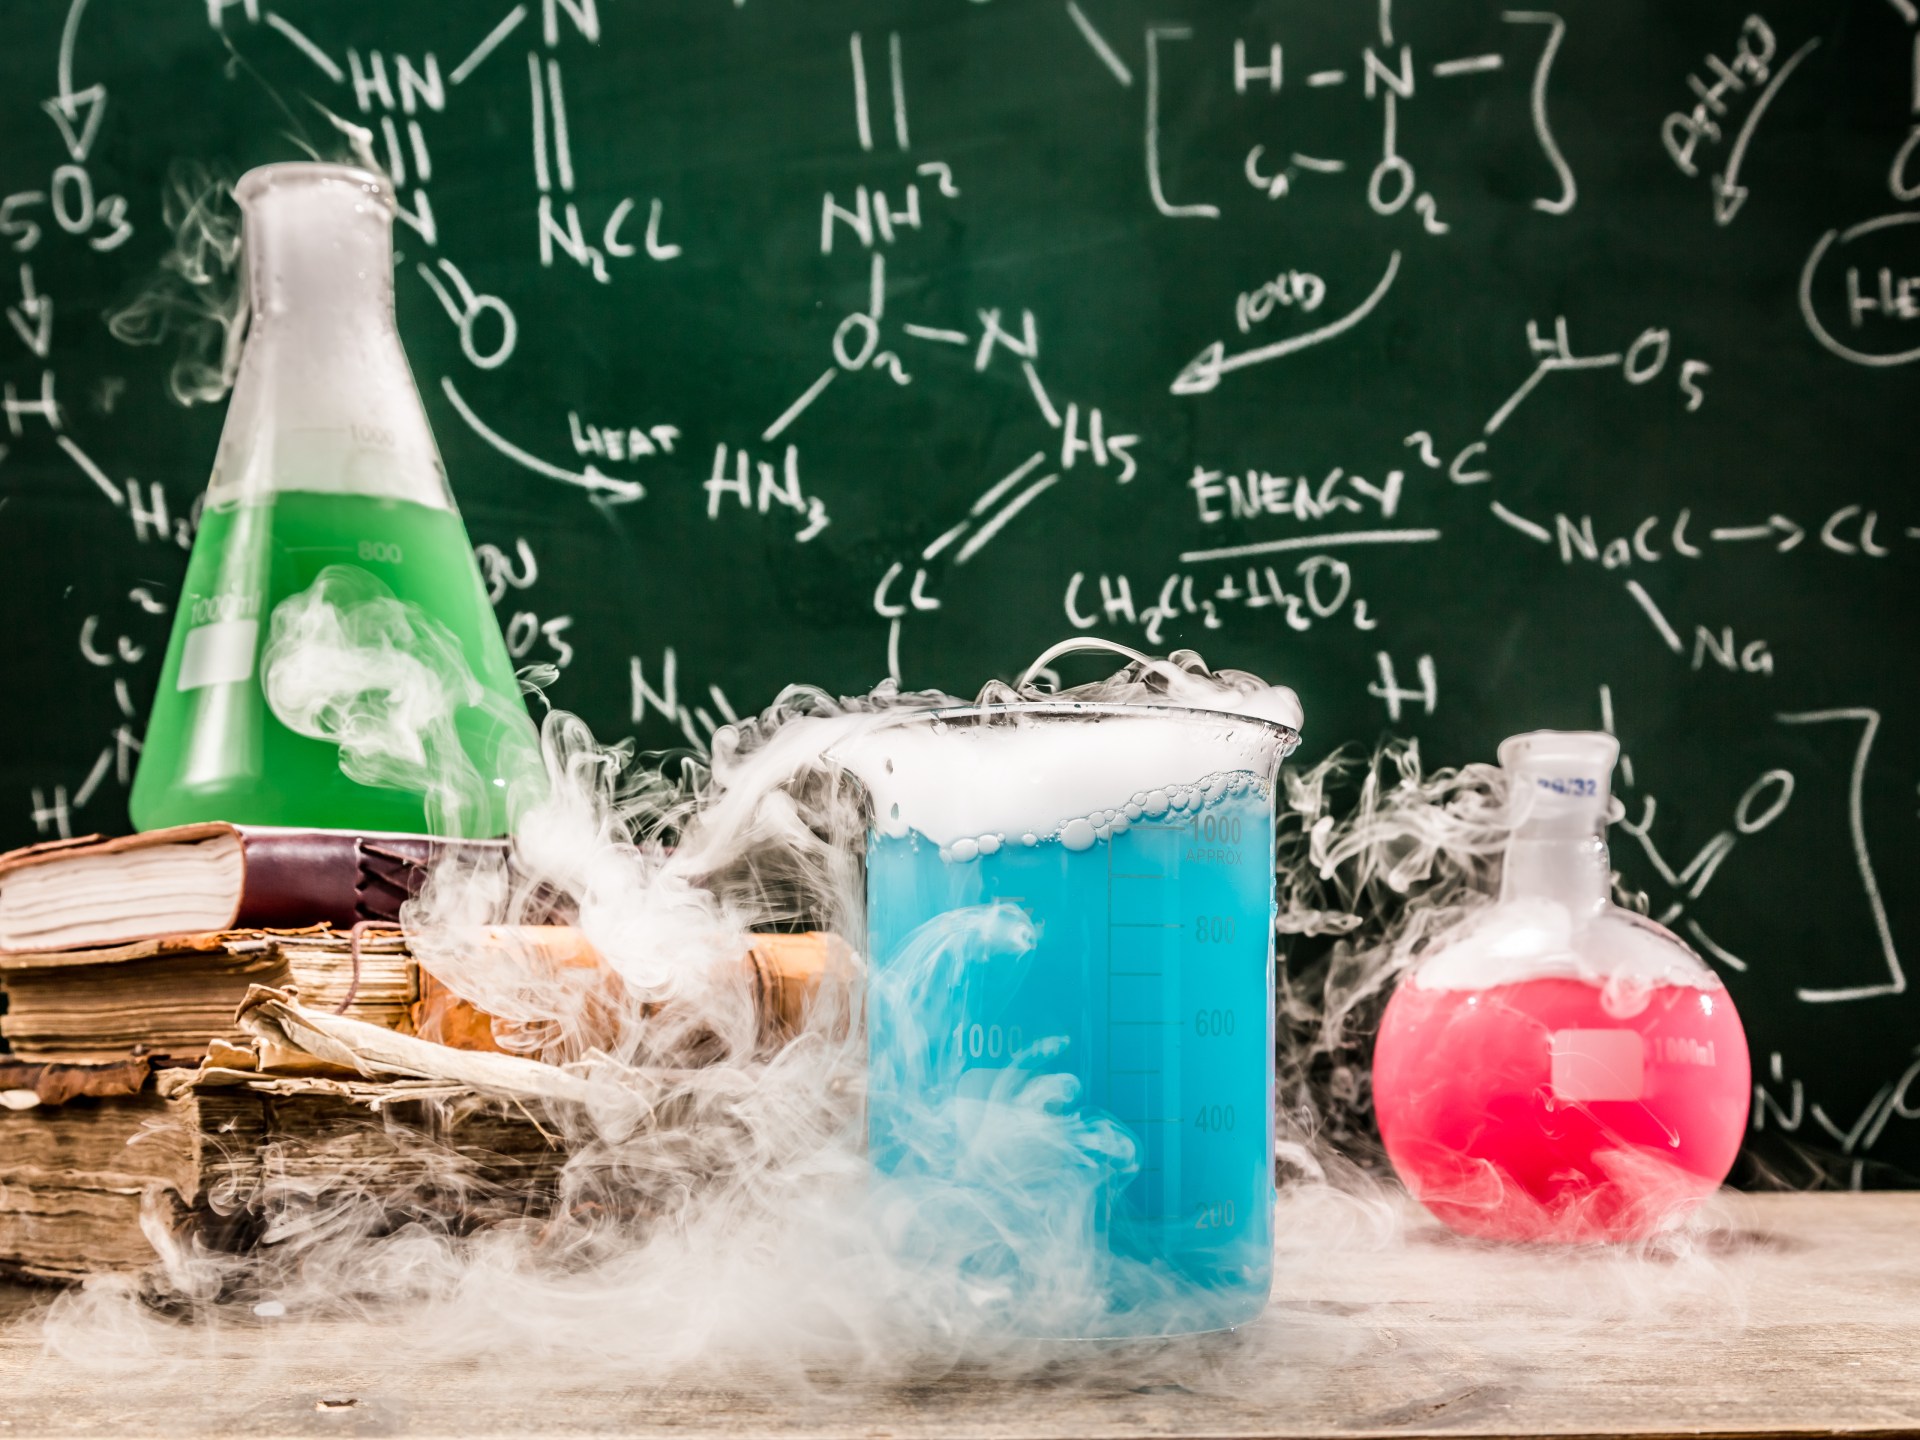 تفاعل كيميائي بسيط قد يسهم في التخلص من نفايات البلاستيك | علوم – البوكس نيوز